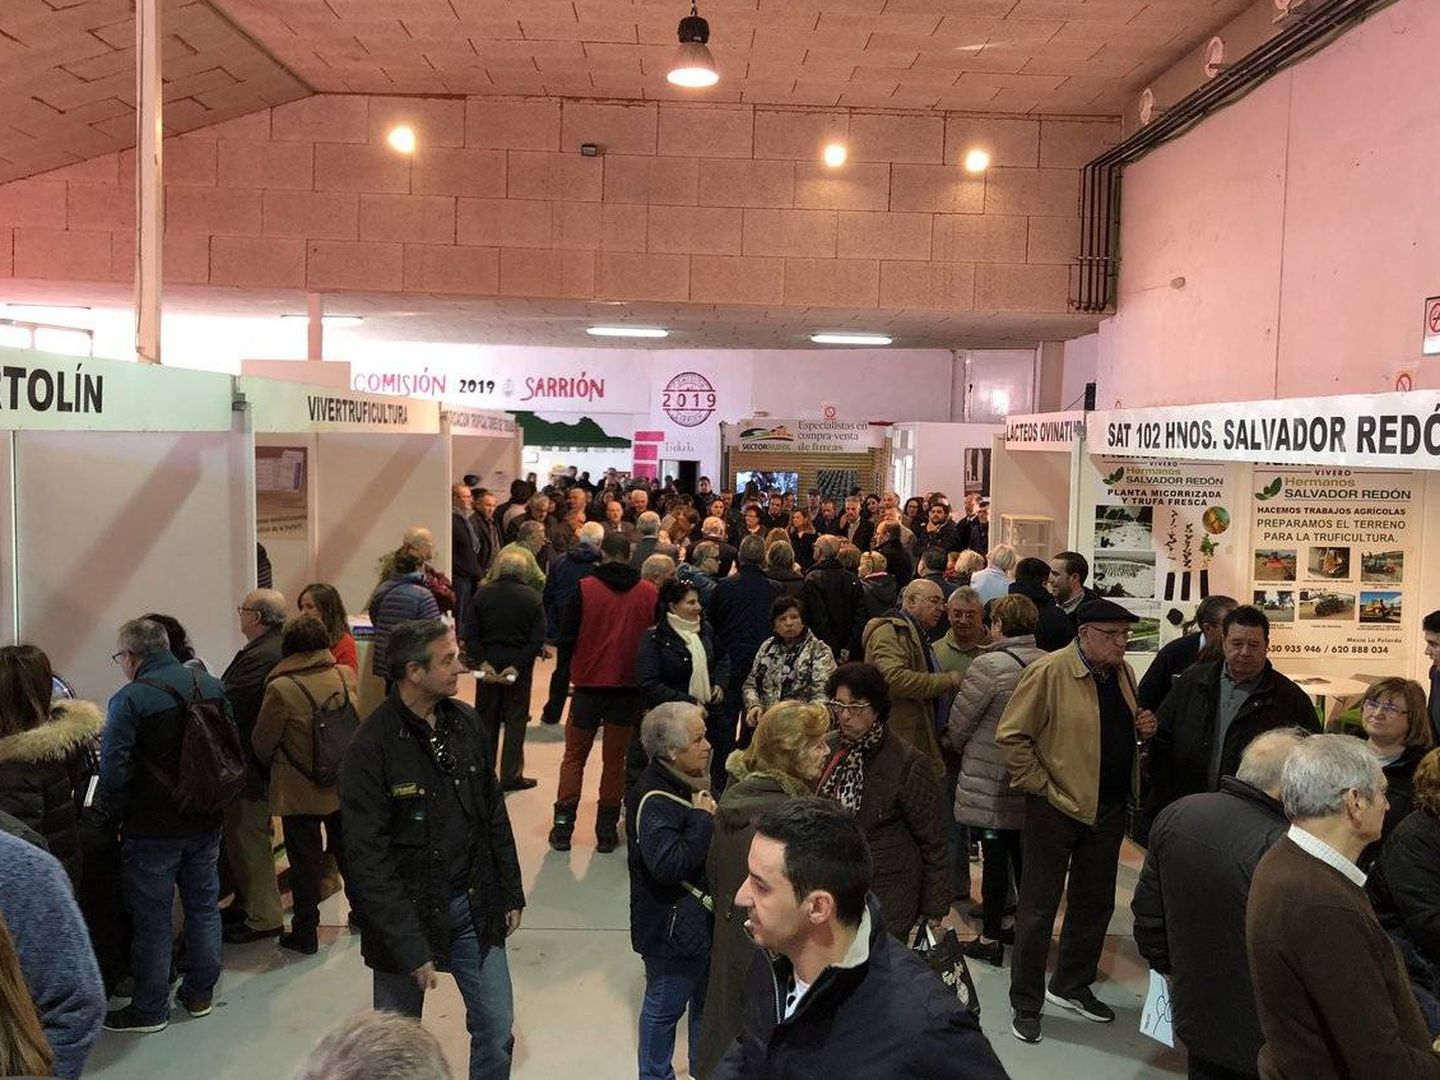 Feria Internacional de la Trufa 2018, celebrada en Sarrión. (Trufa Negra)